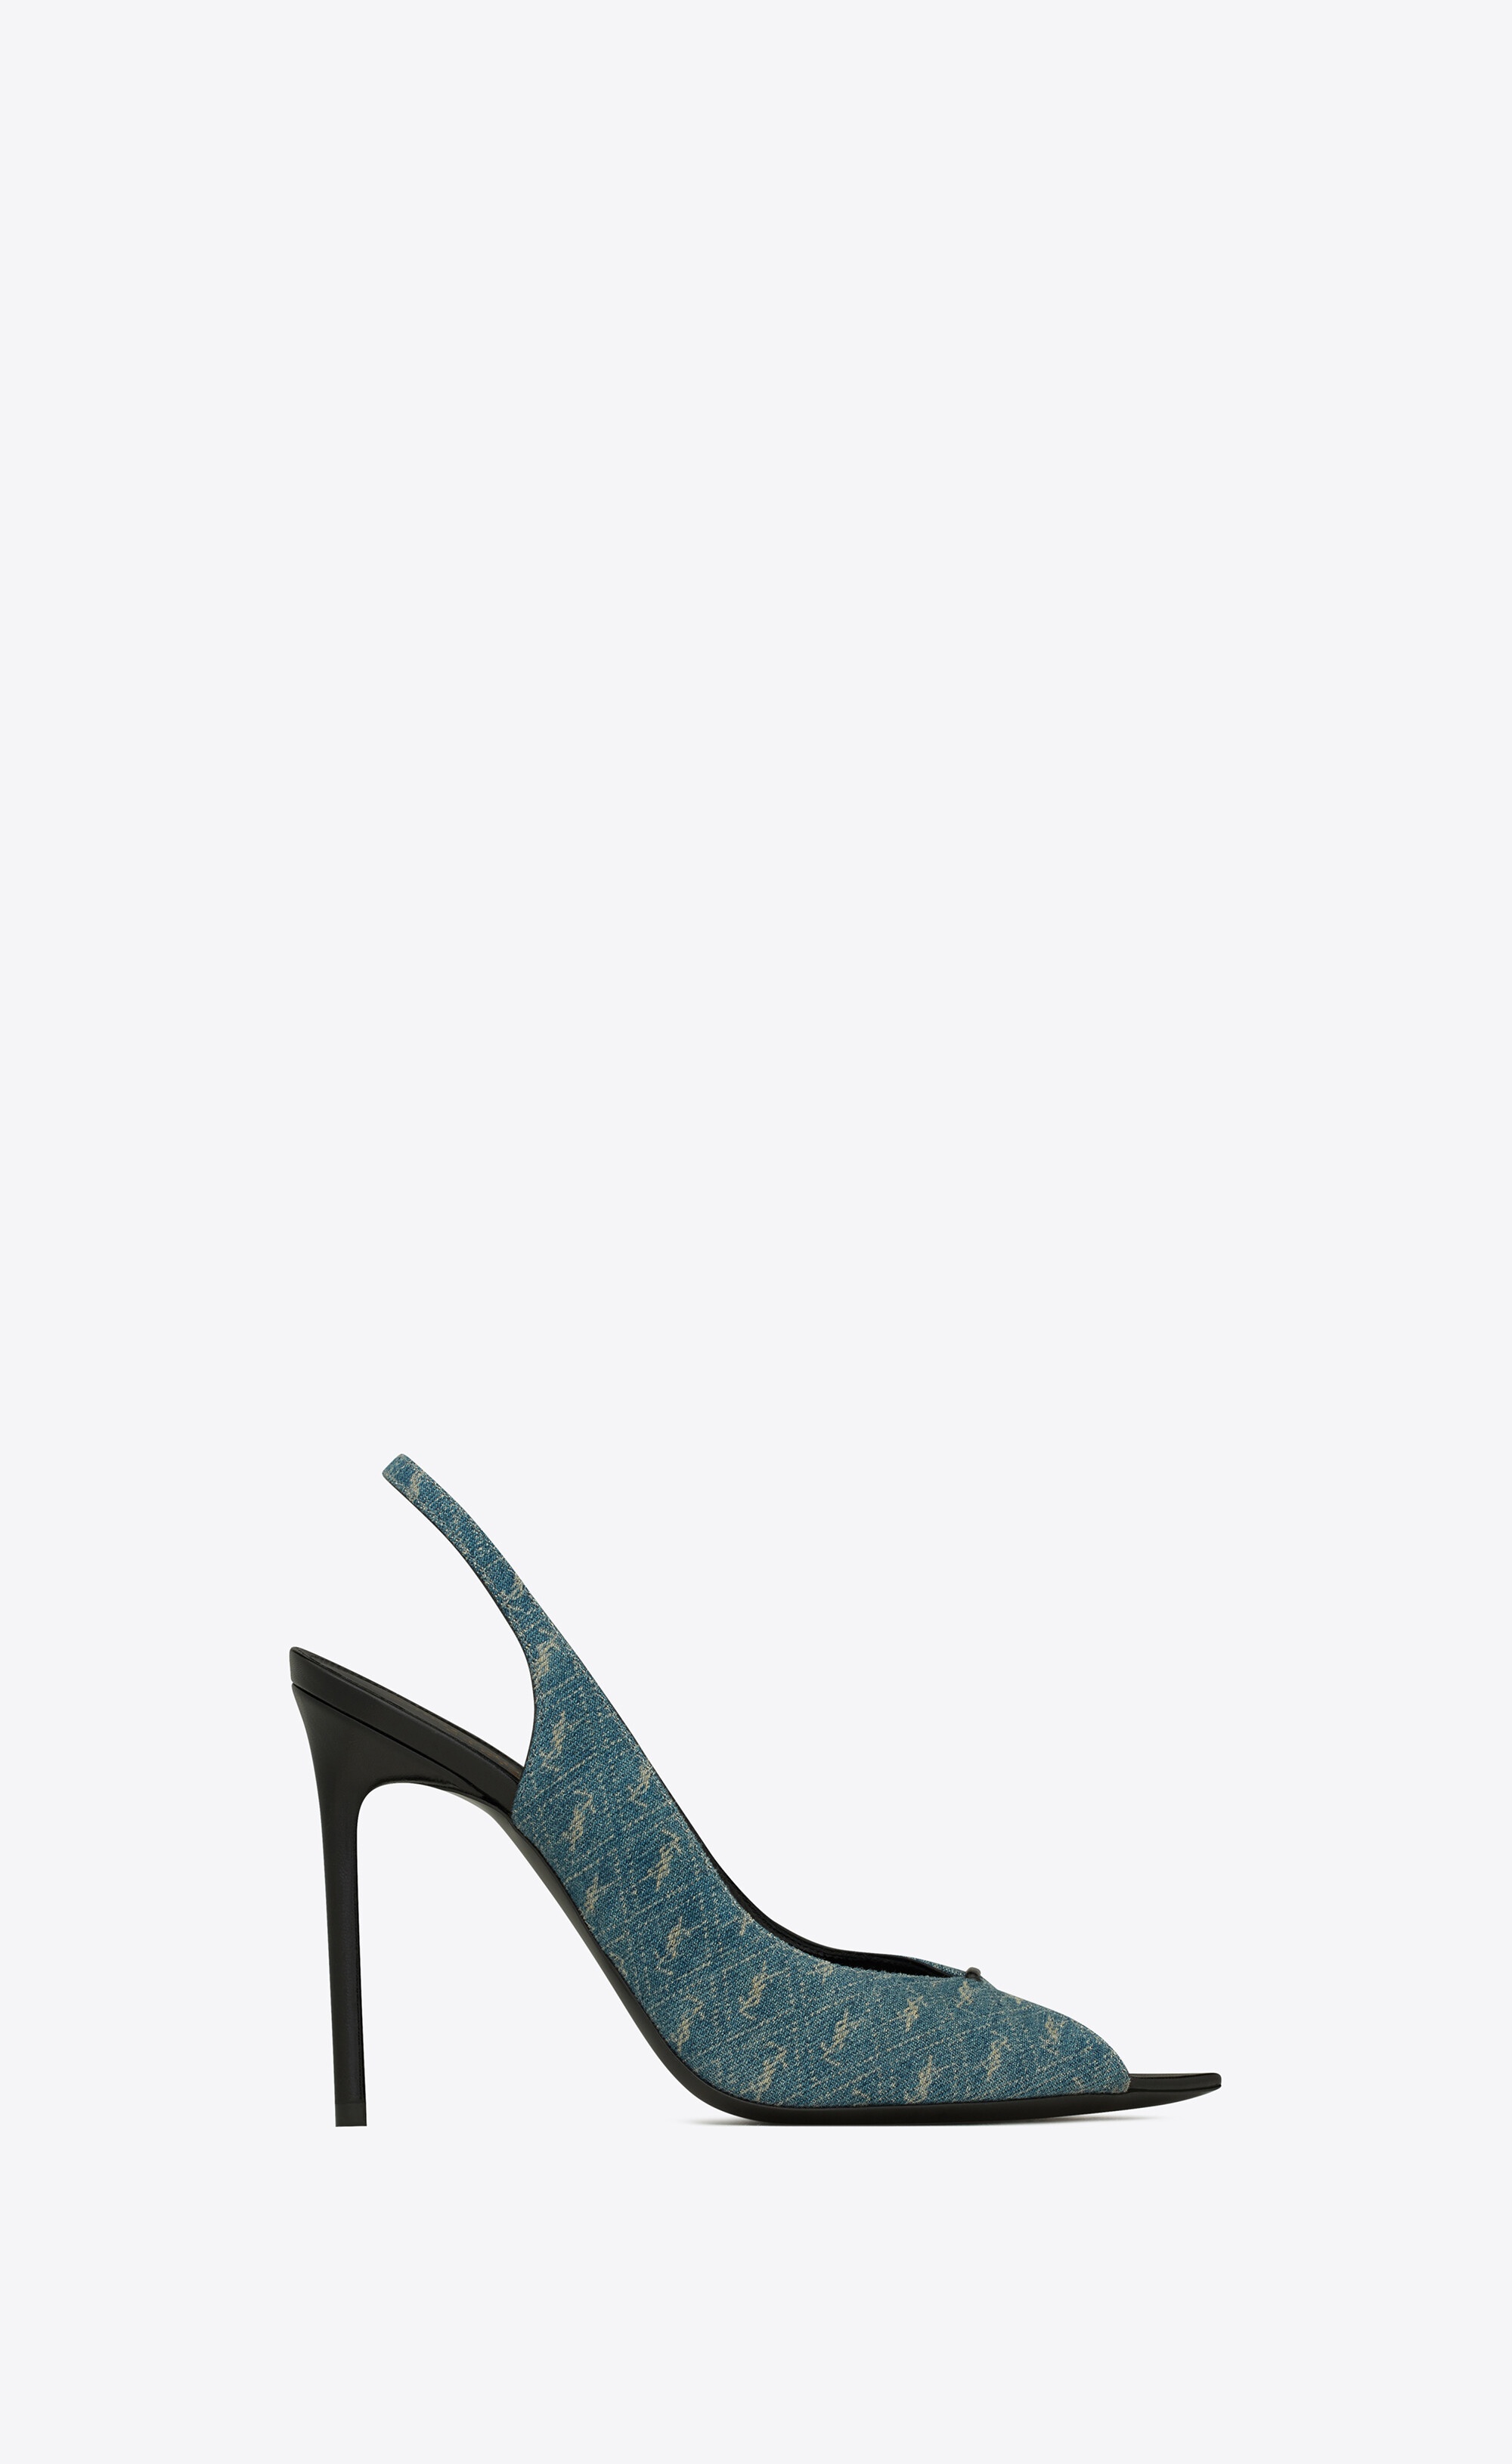 Yves Saint Laurent, Shoes, Yves Saint Laurent Lola Pumps